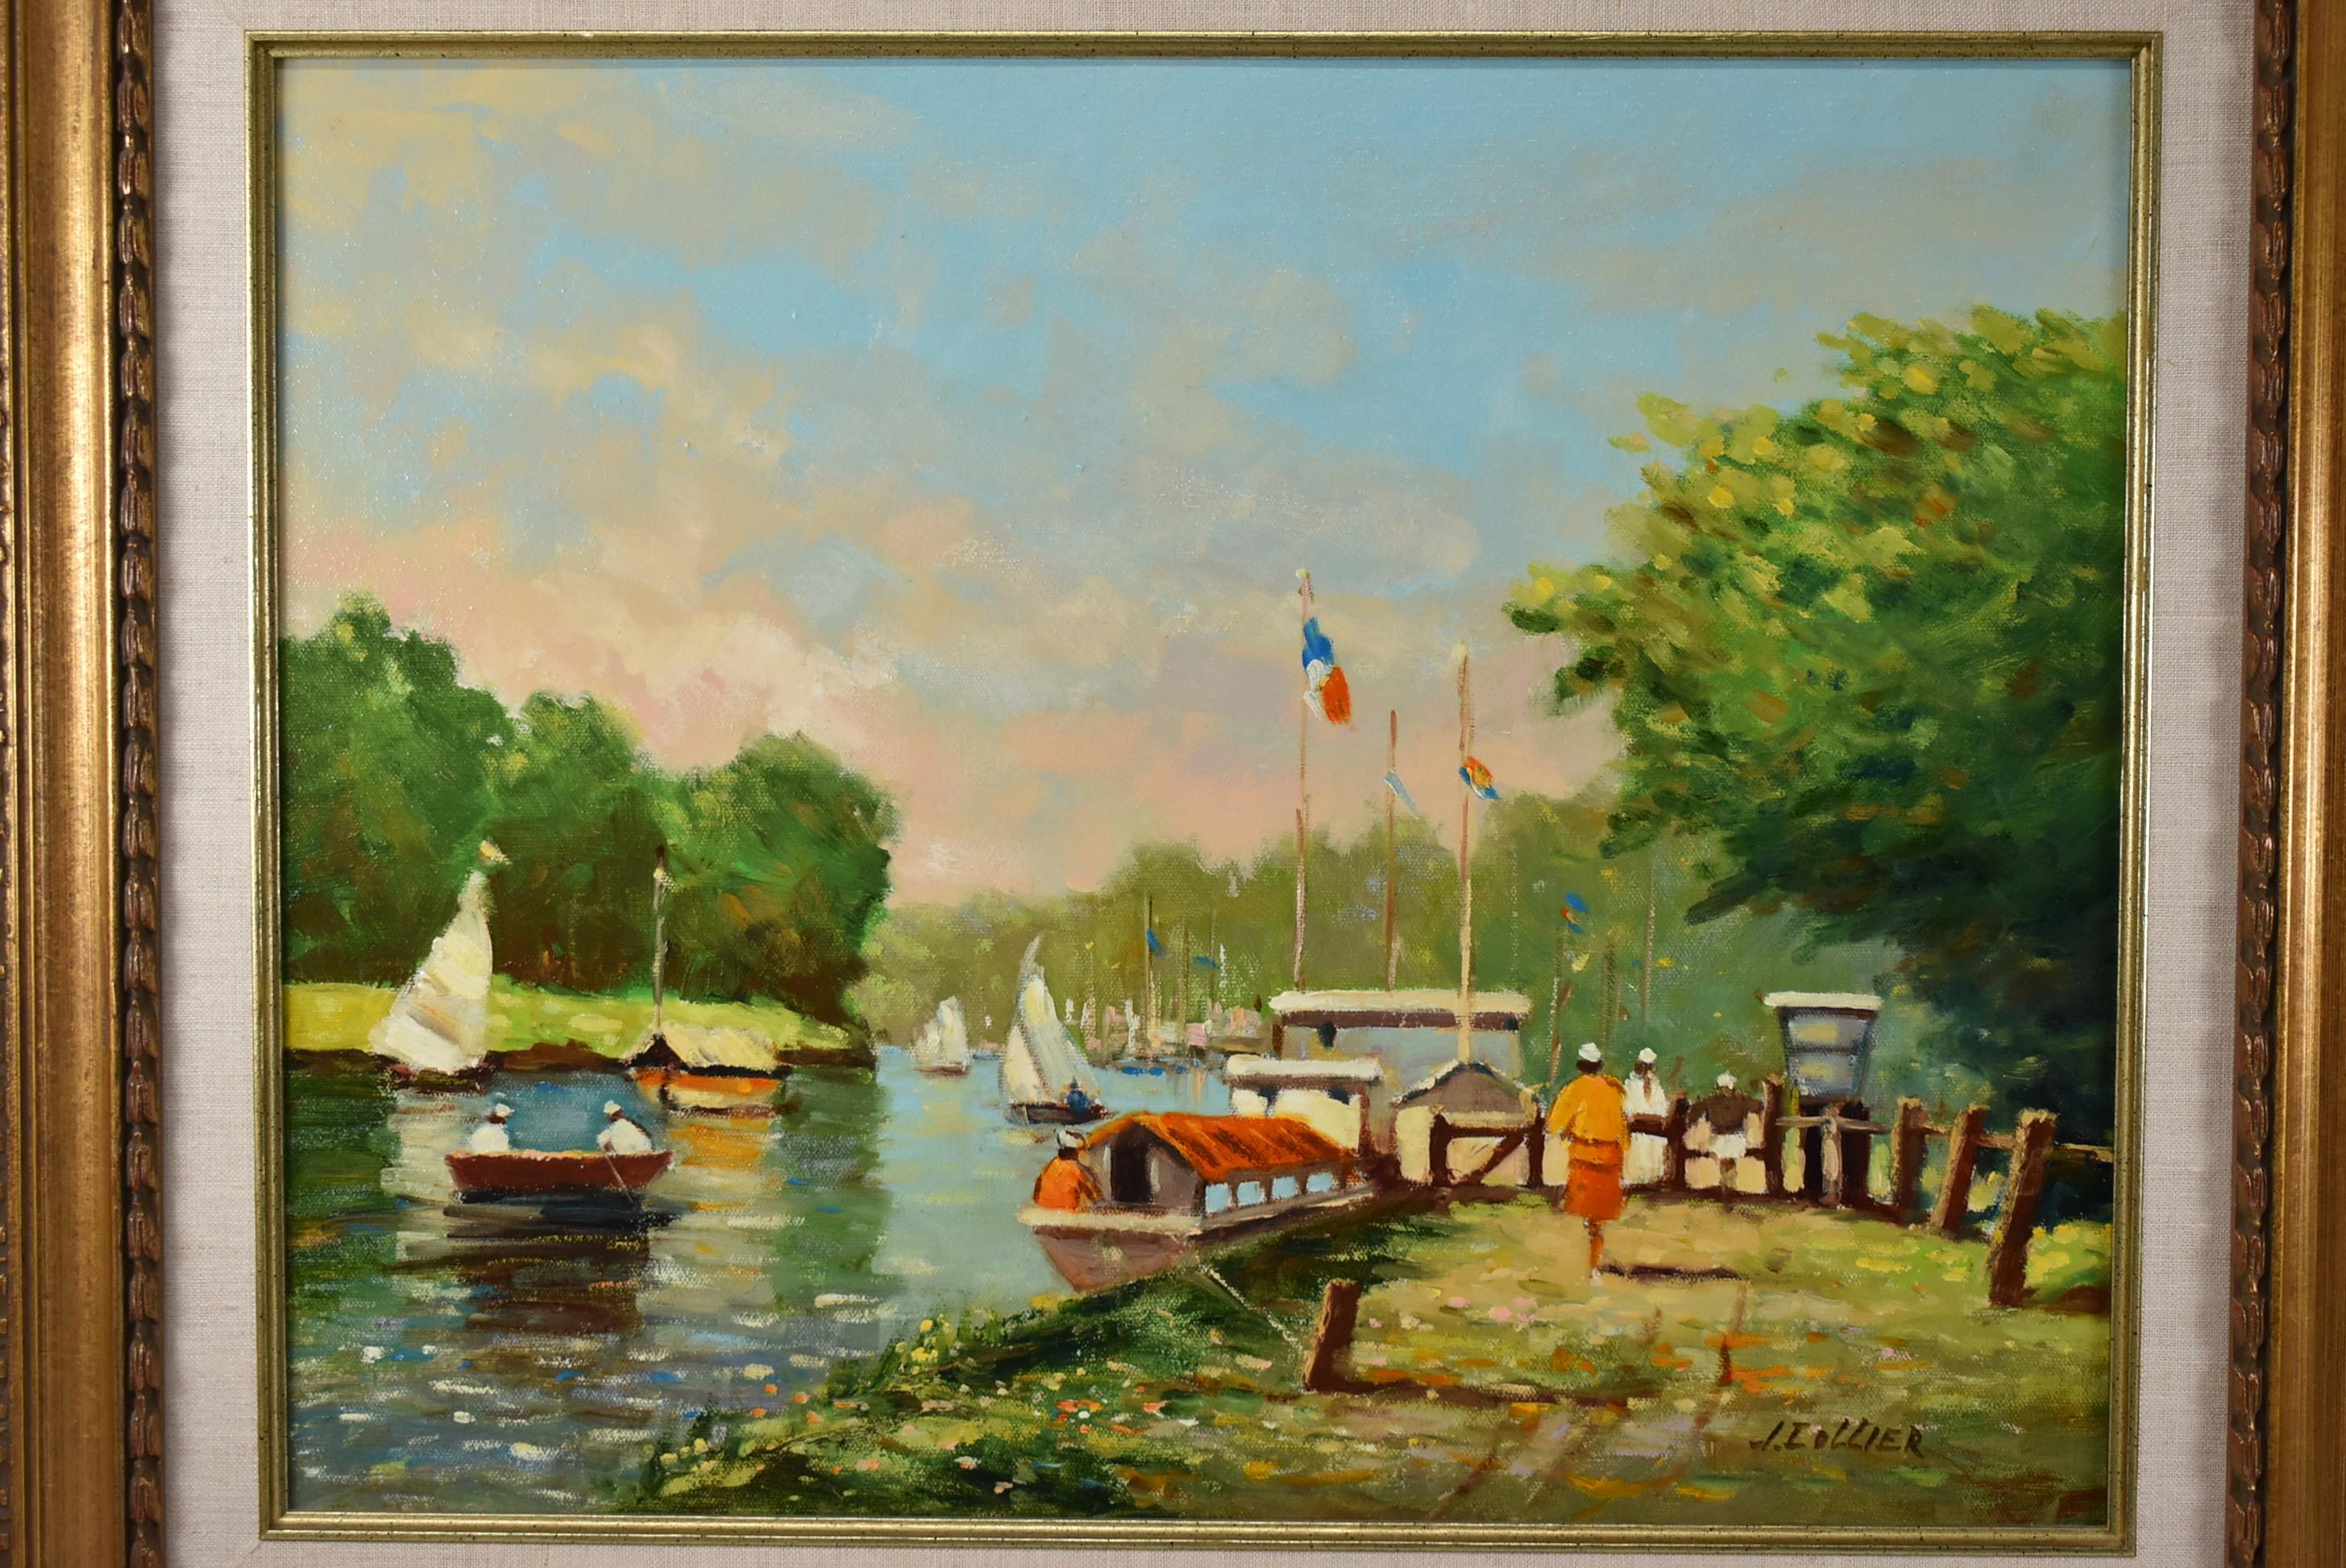 Summertime Thames river court peinture à l'huile sur toile de J. Collier. Scène animée avec des voiliers. Très bon état. La taille de l'image mesure 19,44